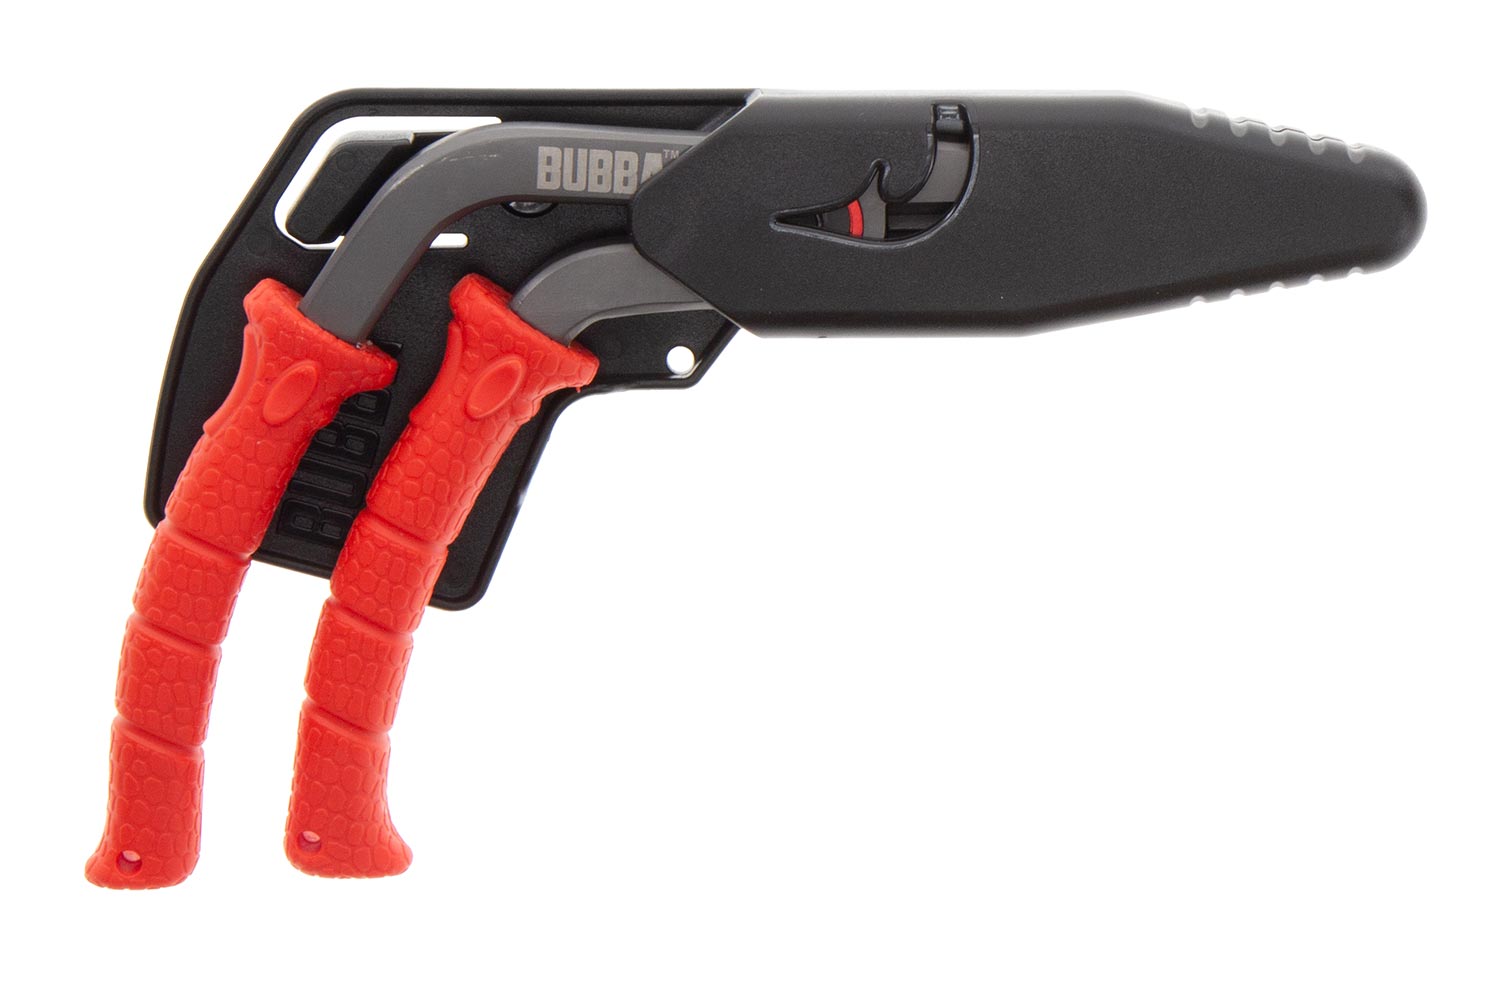 Fishing Gear: Bubba Pistol Grip Pliers